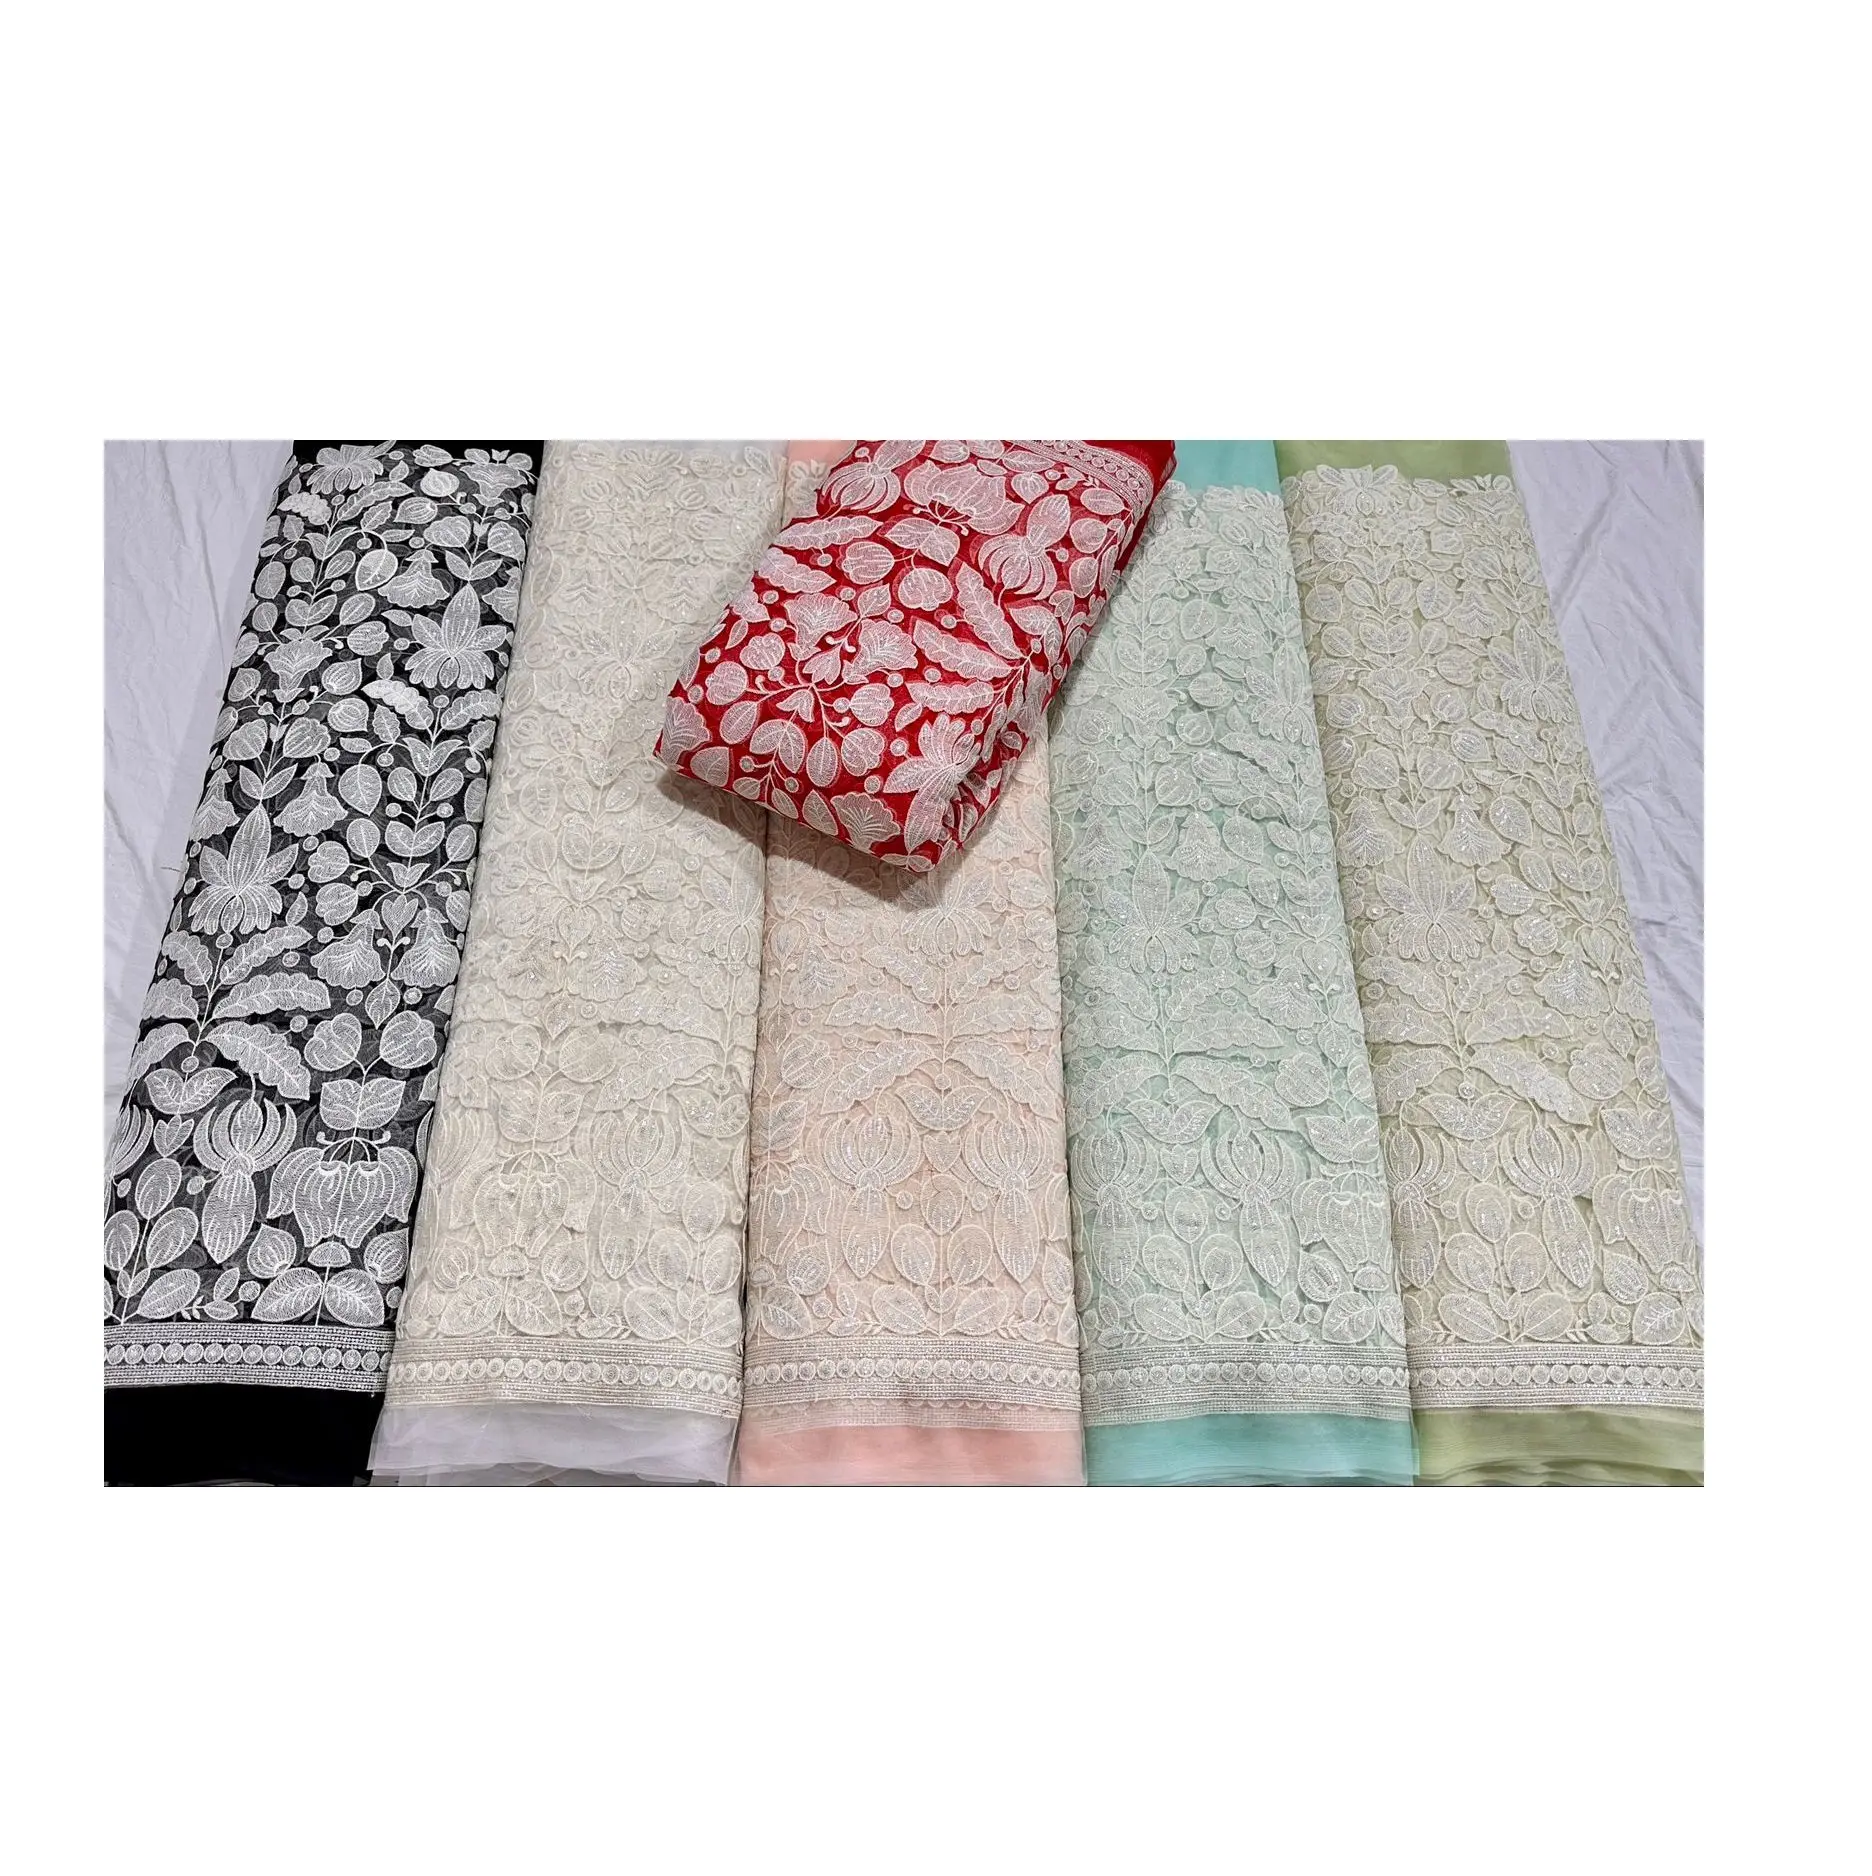 Tissu de filet de broderie de prix d'usine en gros pour robe de mariée du fabricant et fournisseur indiens